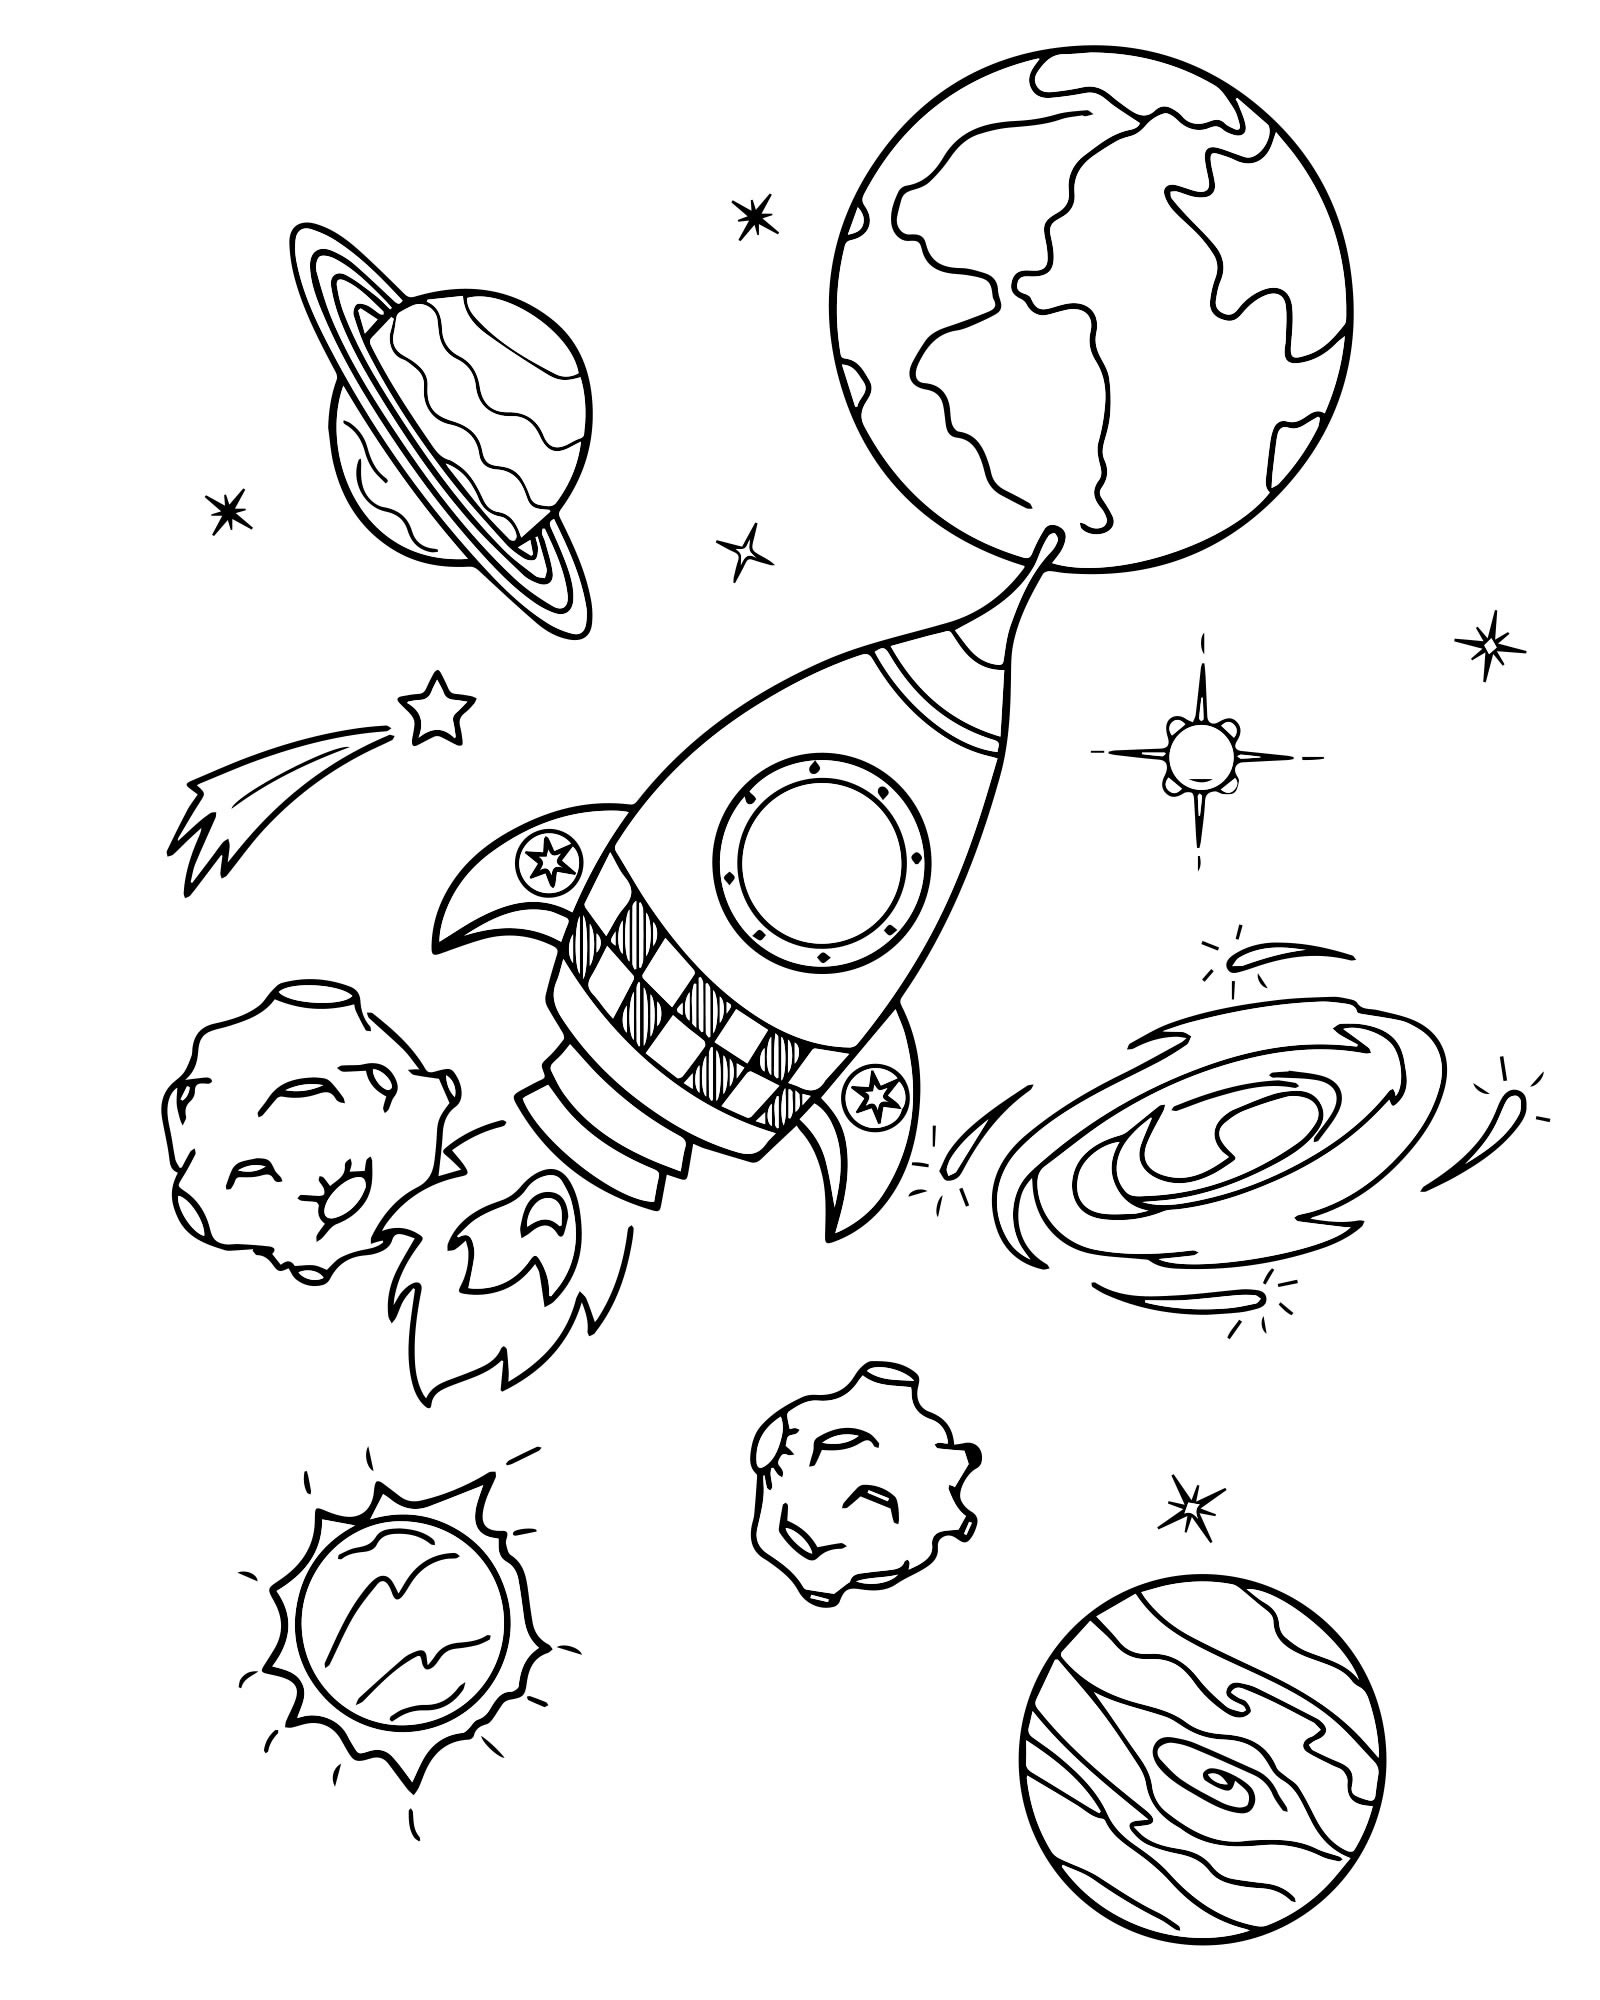 Раскраски к дню космонавтики для детей распечатать. Космос раскраска для детей. Раскраска. В космосе. Раскраска космос и планеты для детей. Раскраска для малышей. Космос.